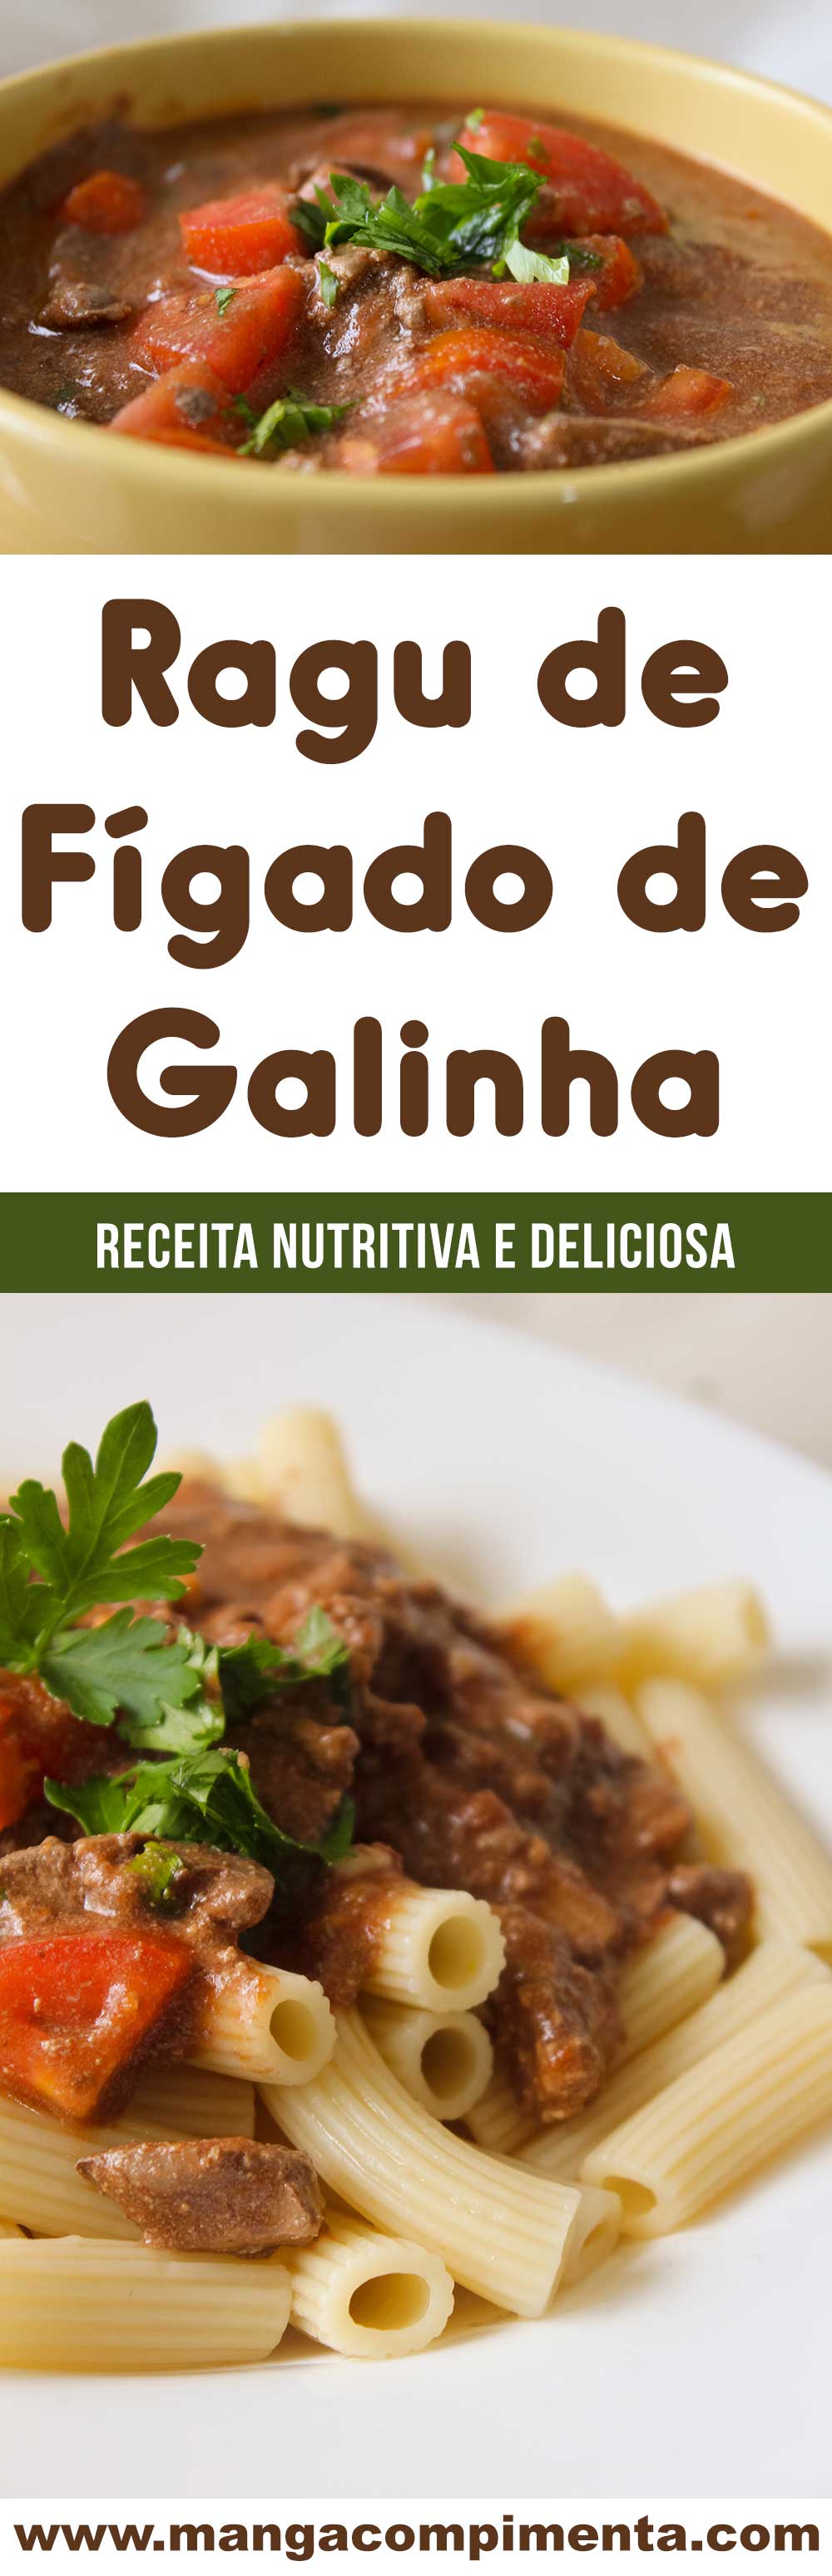 Receita de Ragu de Fígado de Galinha - um prato caseiro, econômico, nutritivo e delicioso para o almoço ou jantar!